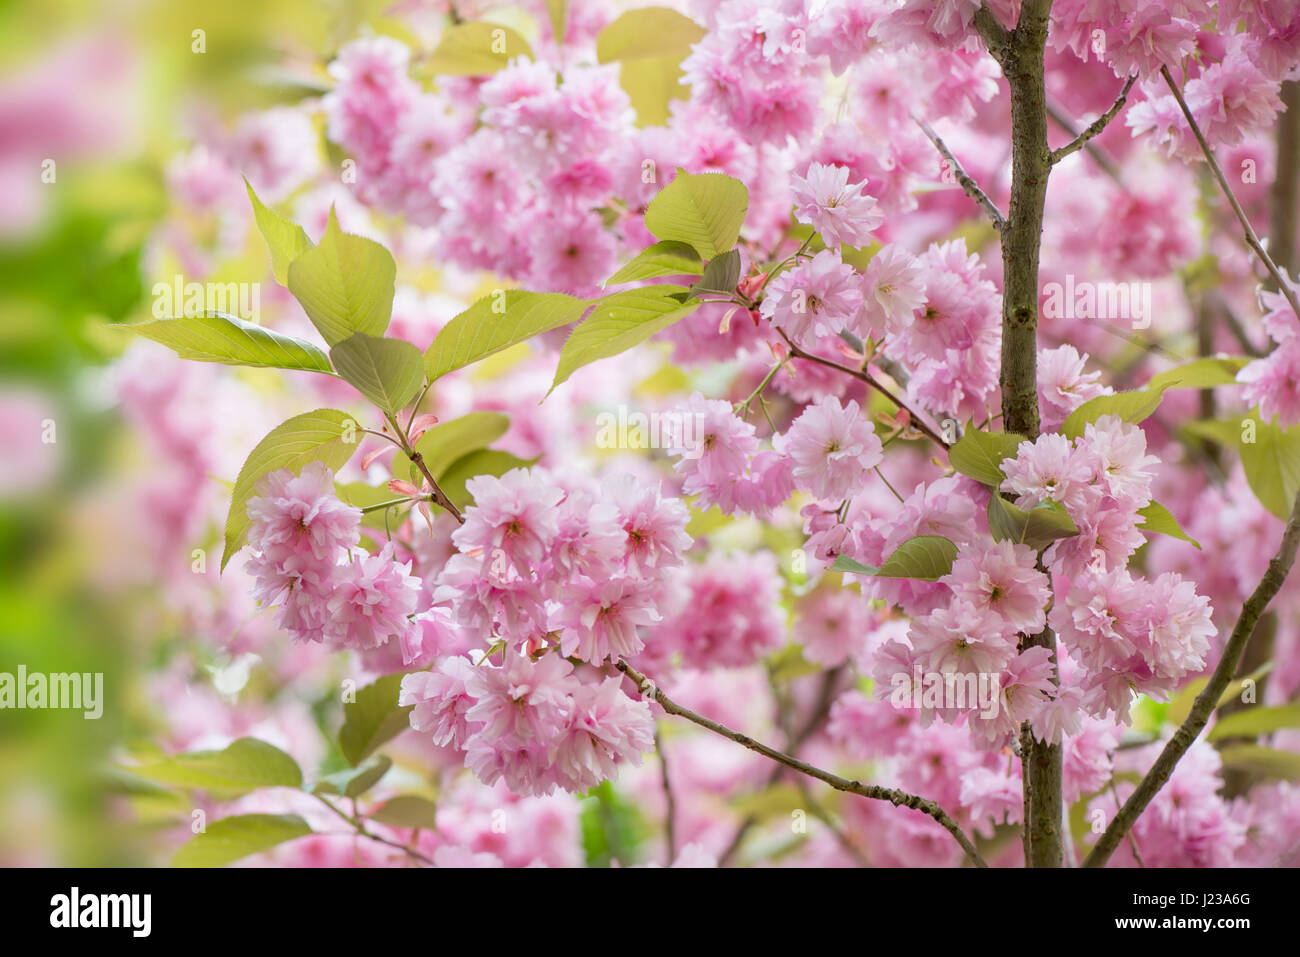 La belle rose à fleurs de printemps, de fleurs de cerisier Prunus 'Kanzan' un Japanese flowering cherry tree. Banque D'Images